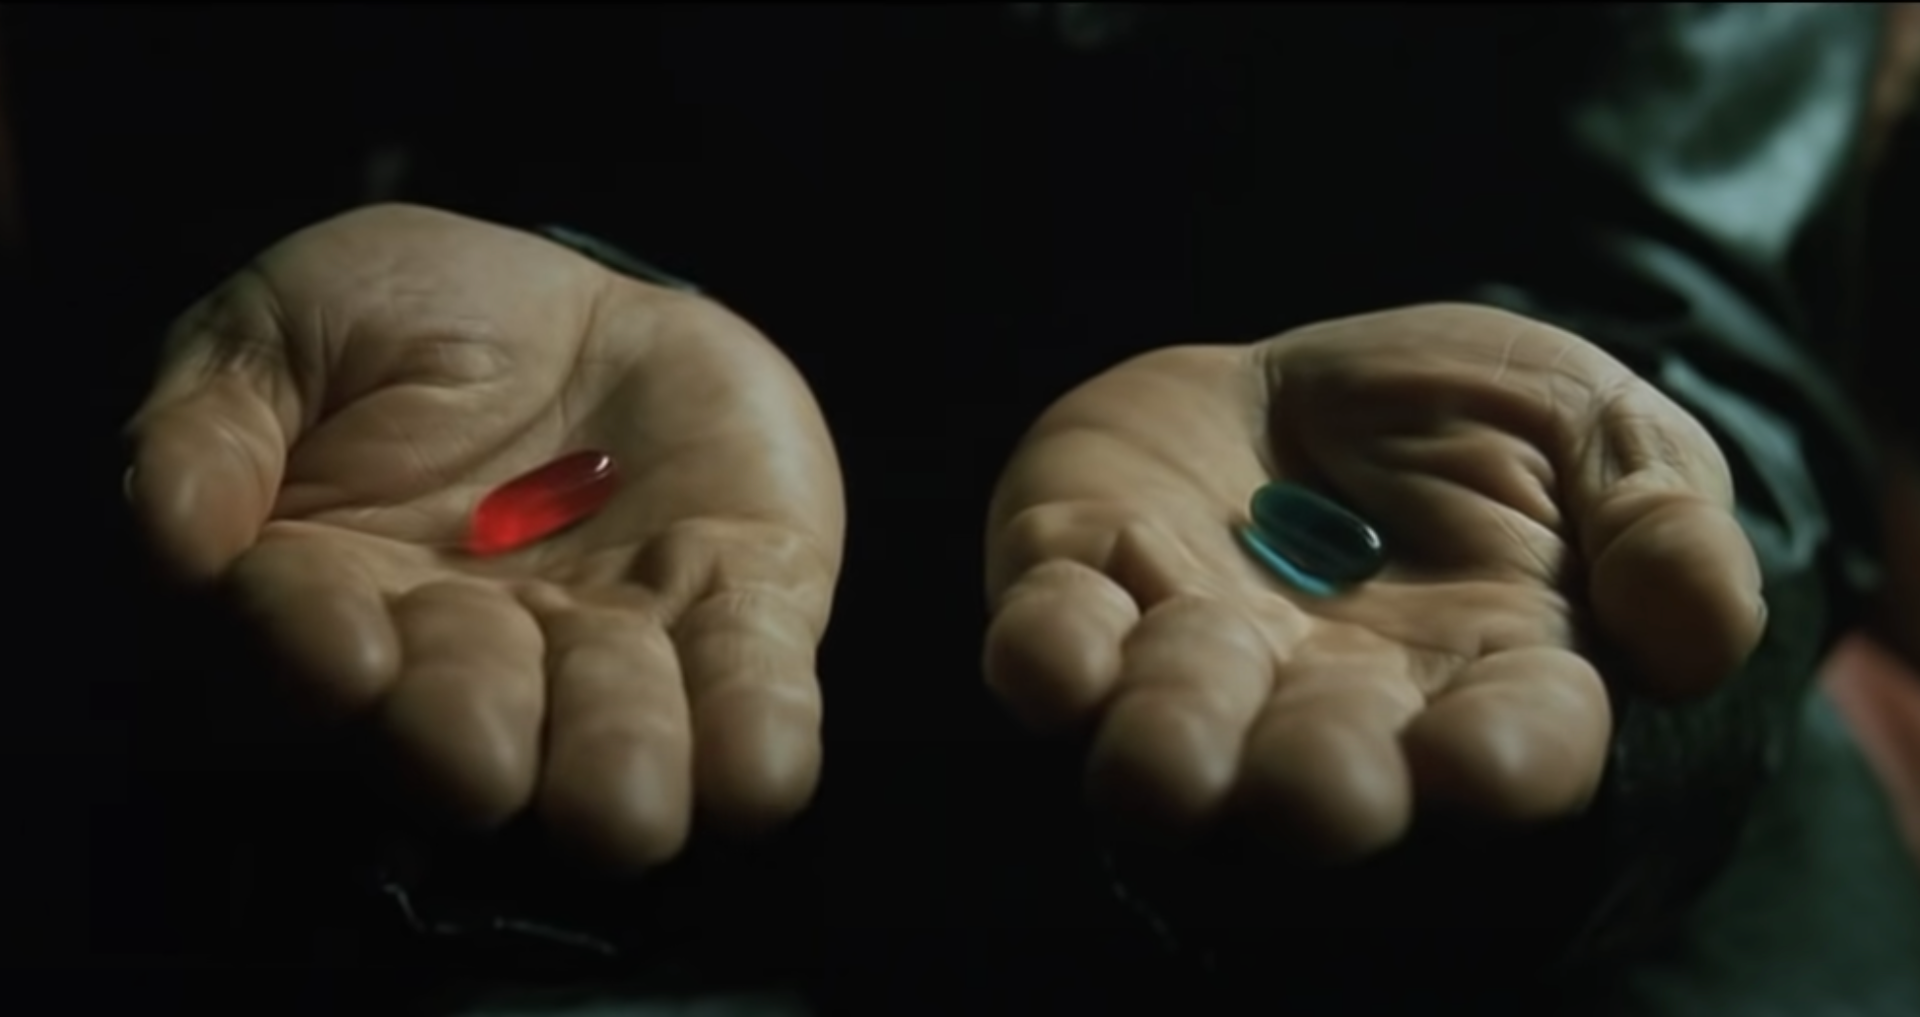 映画『マトリックス』より「これは最後のチャンスだ！青い薬を飲むか、赤い薬を飲むか？」（今日の名言・その61）